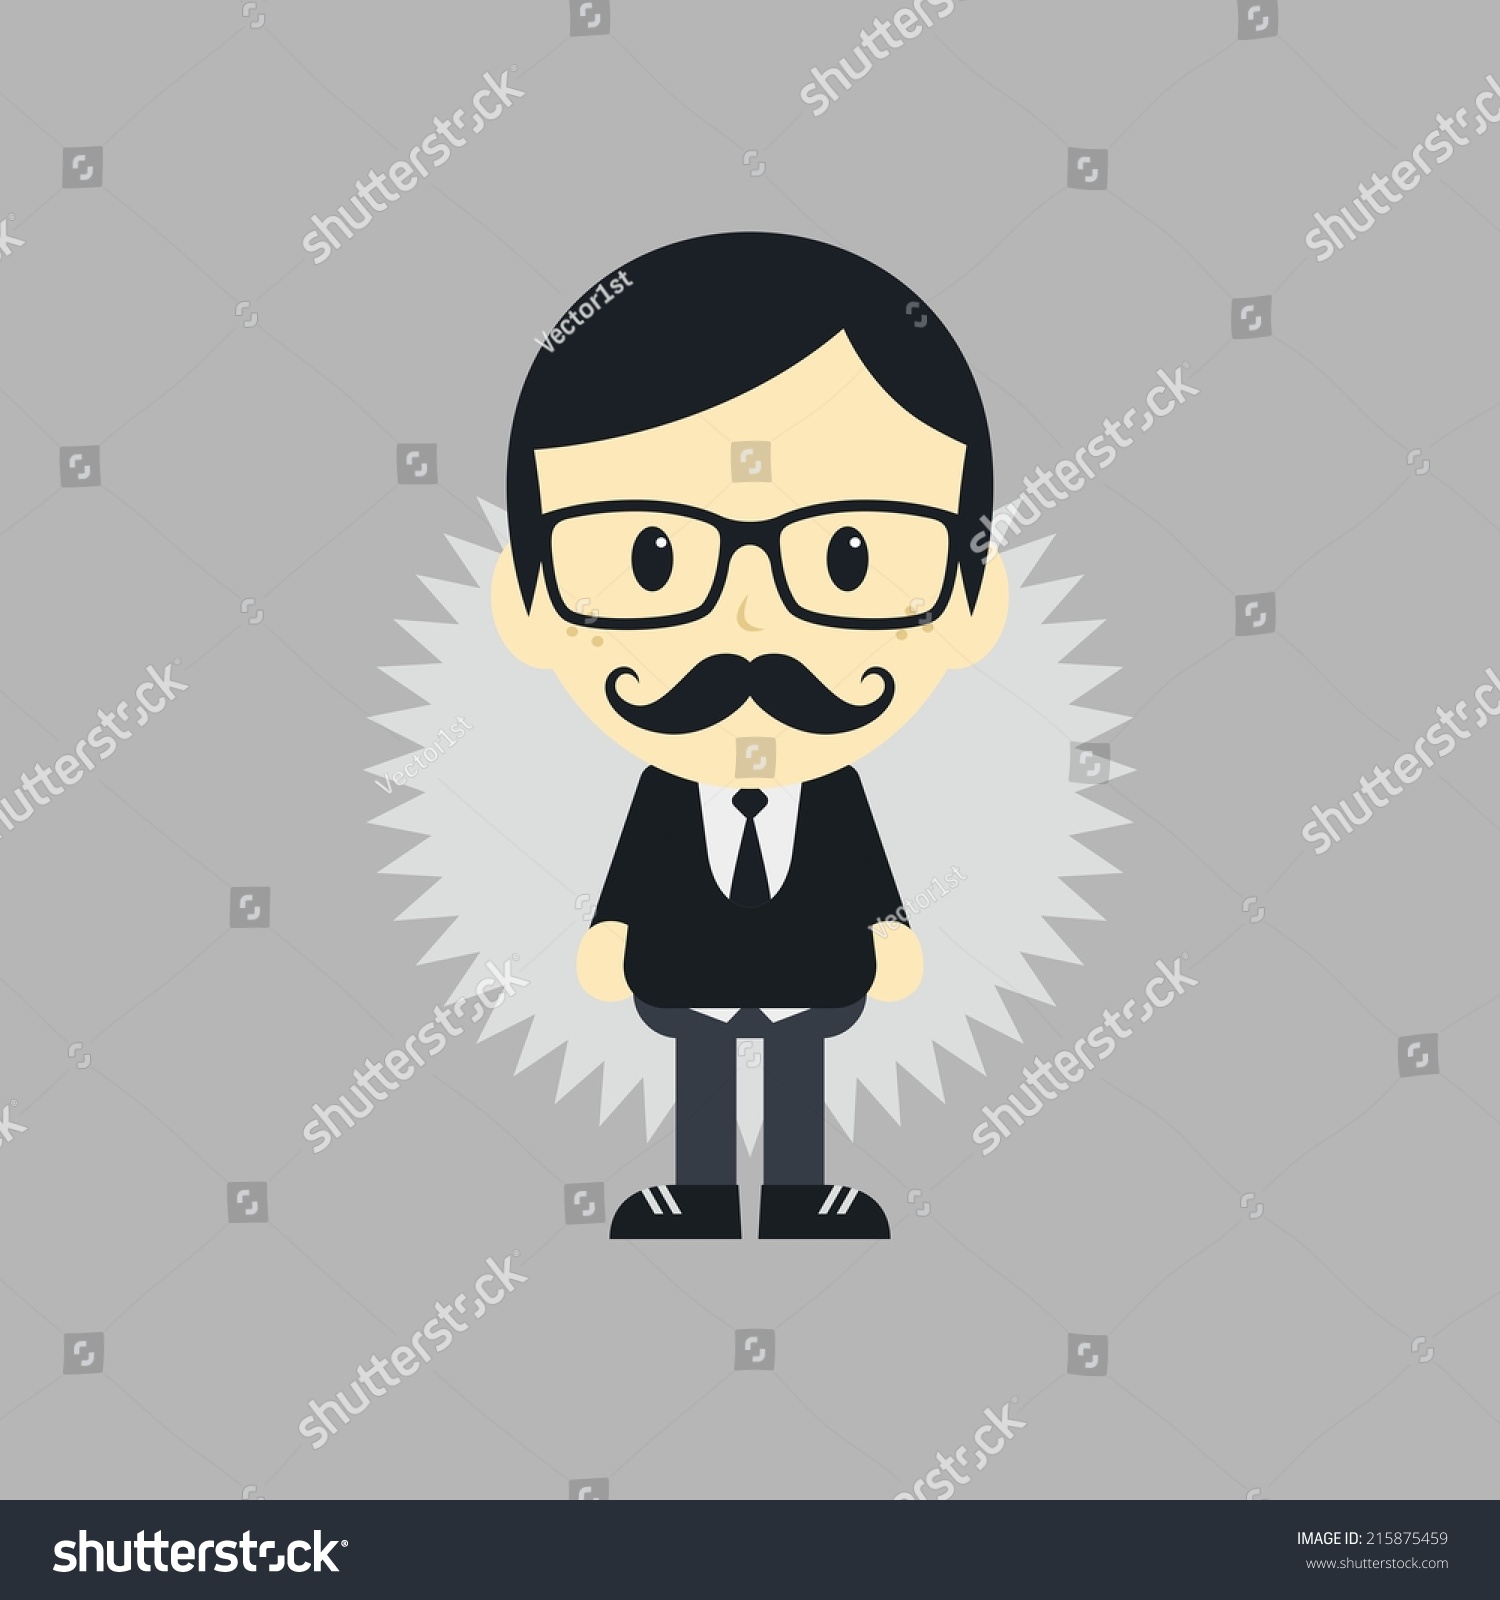 Mustache Guy Cartoon Stock Vector 215875459 - Shutterstock